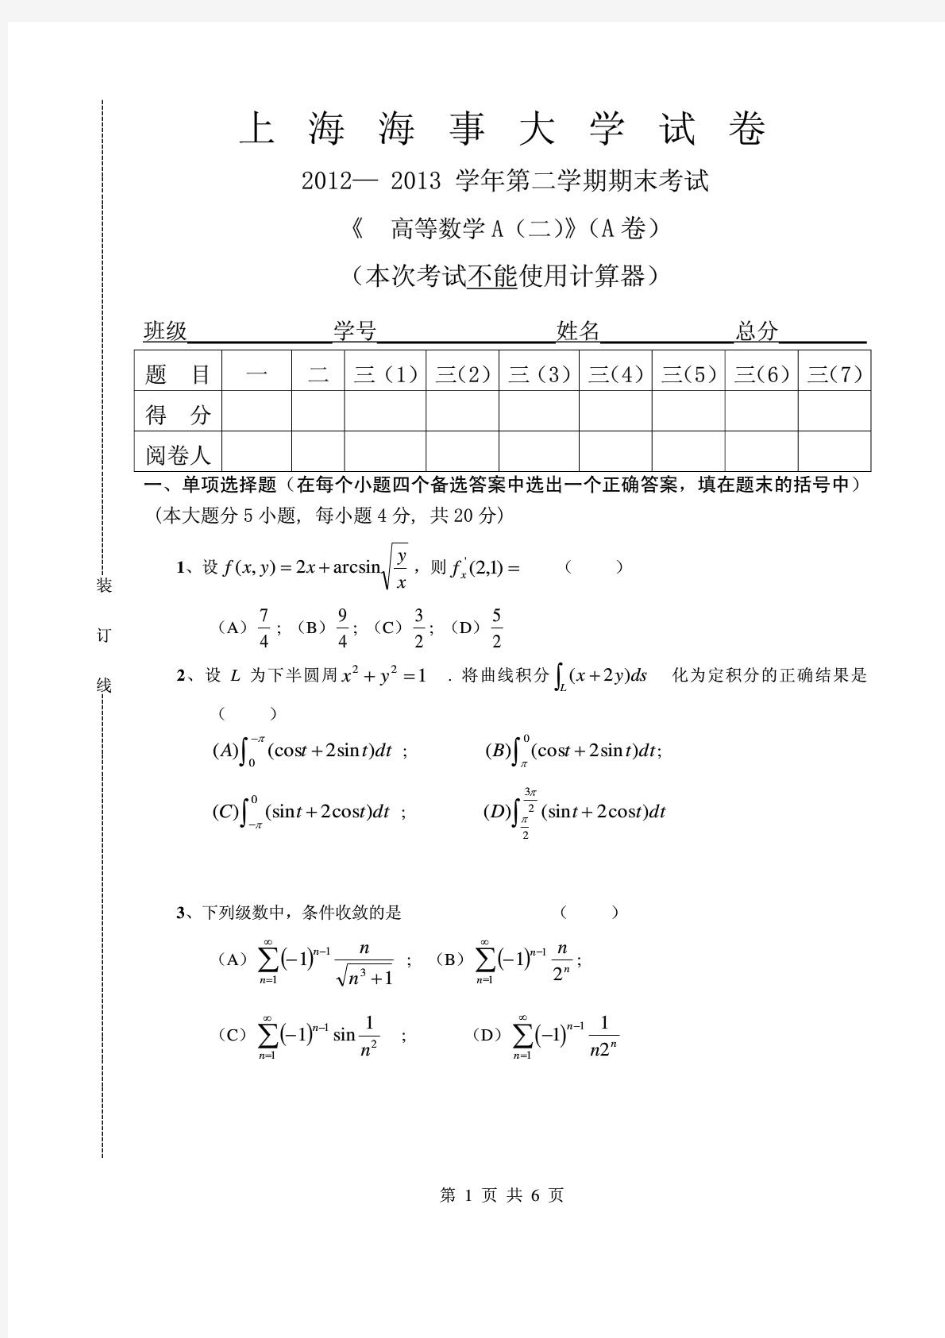 上海海事大学高等数学A(二)2012-2013(A)